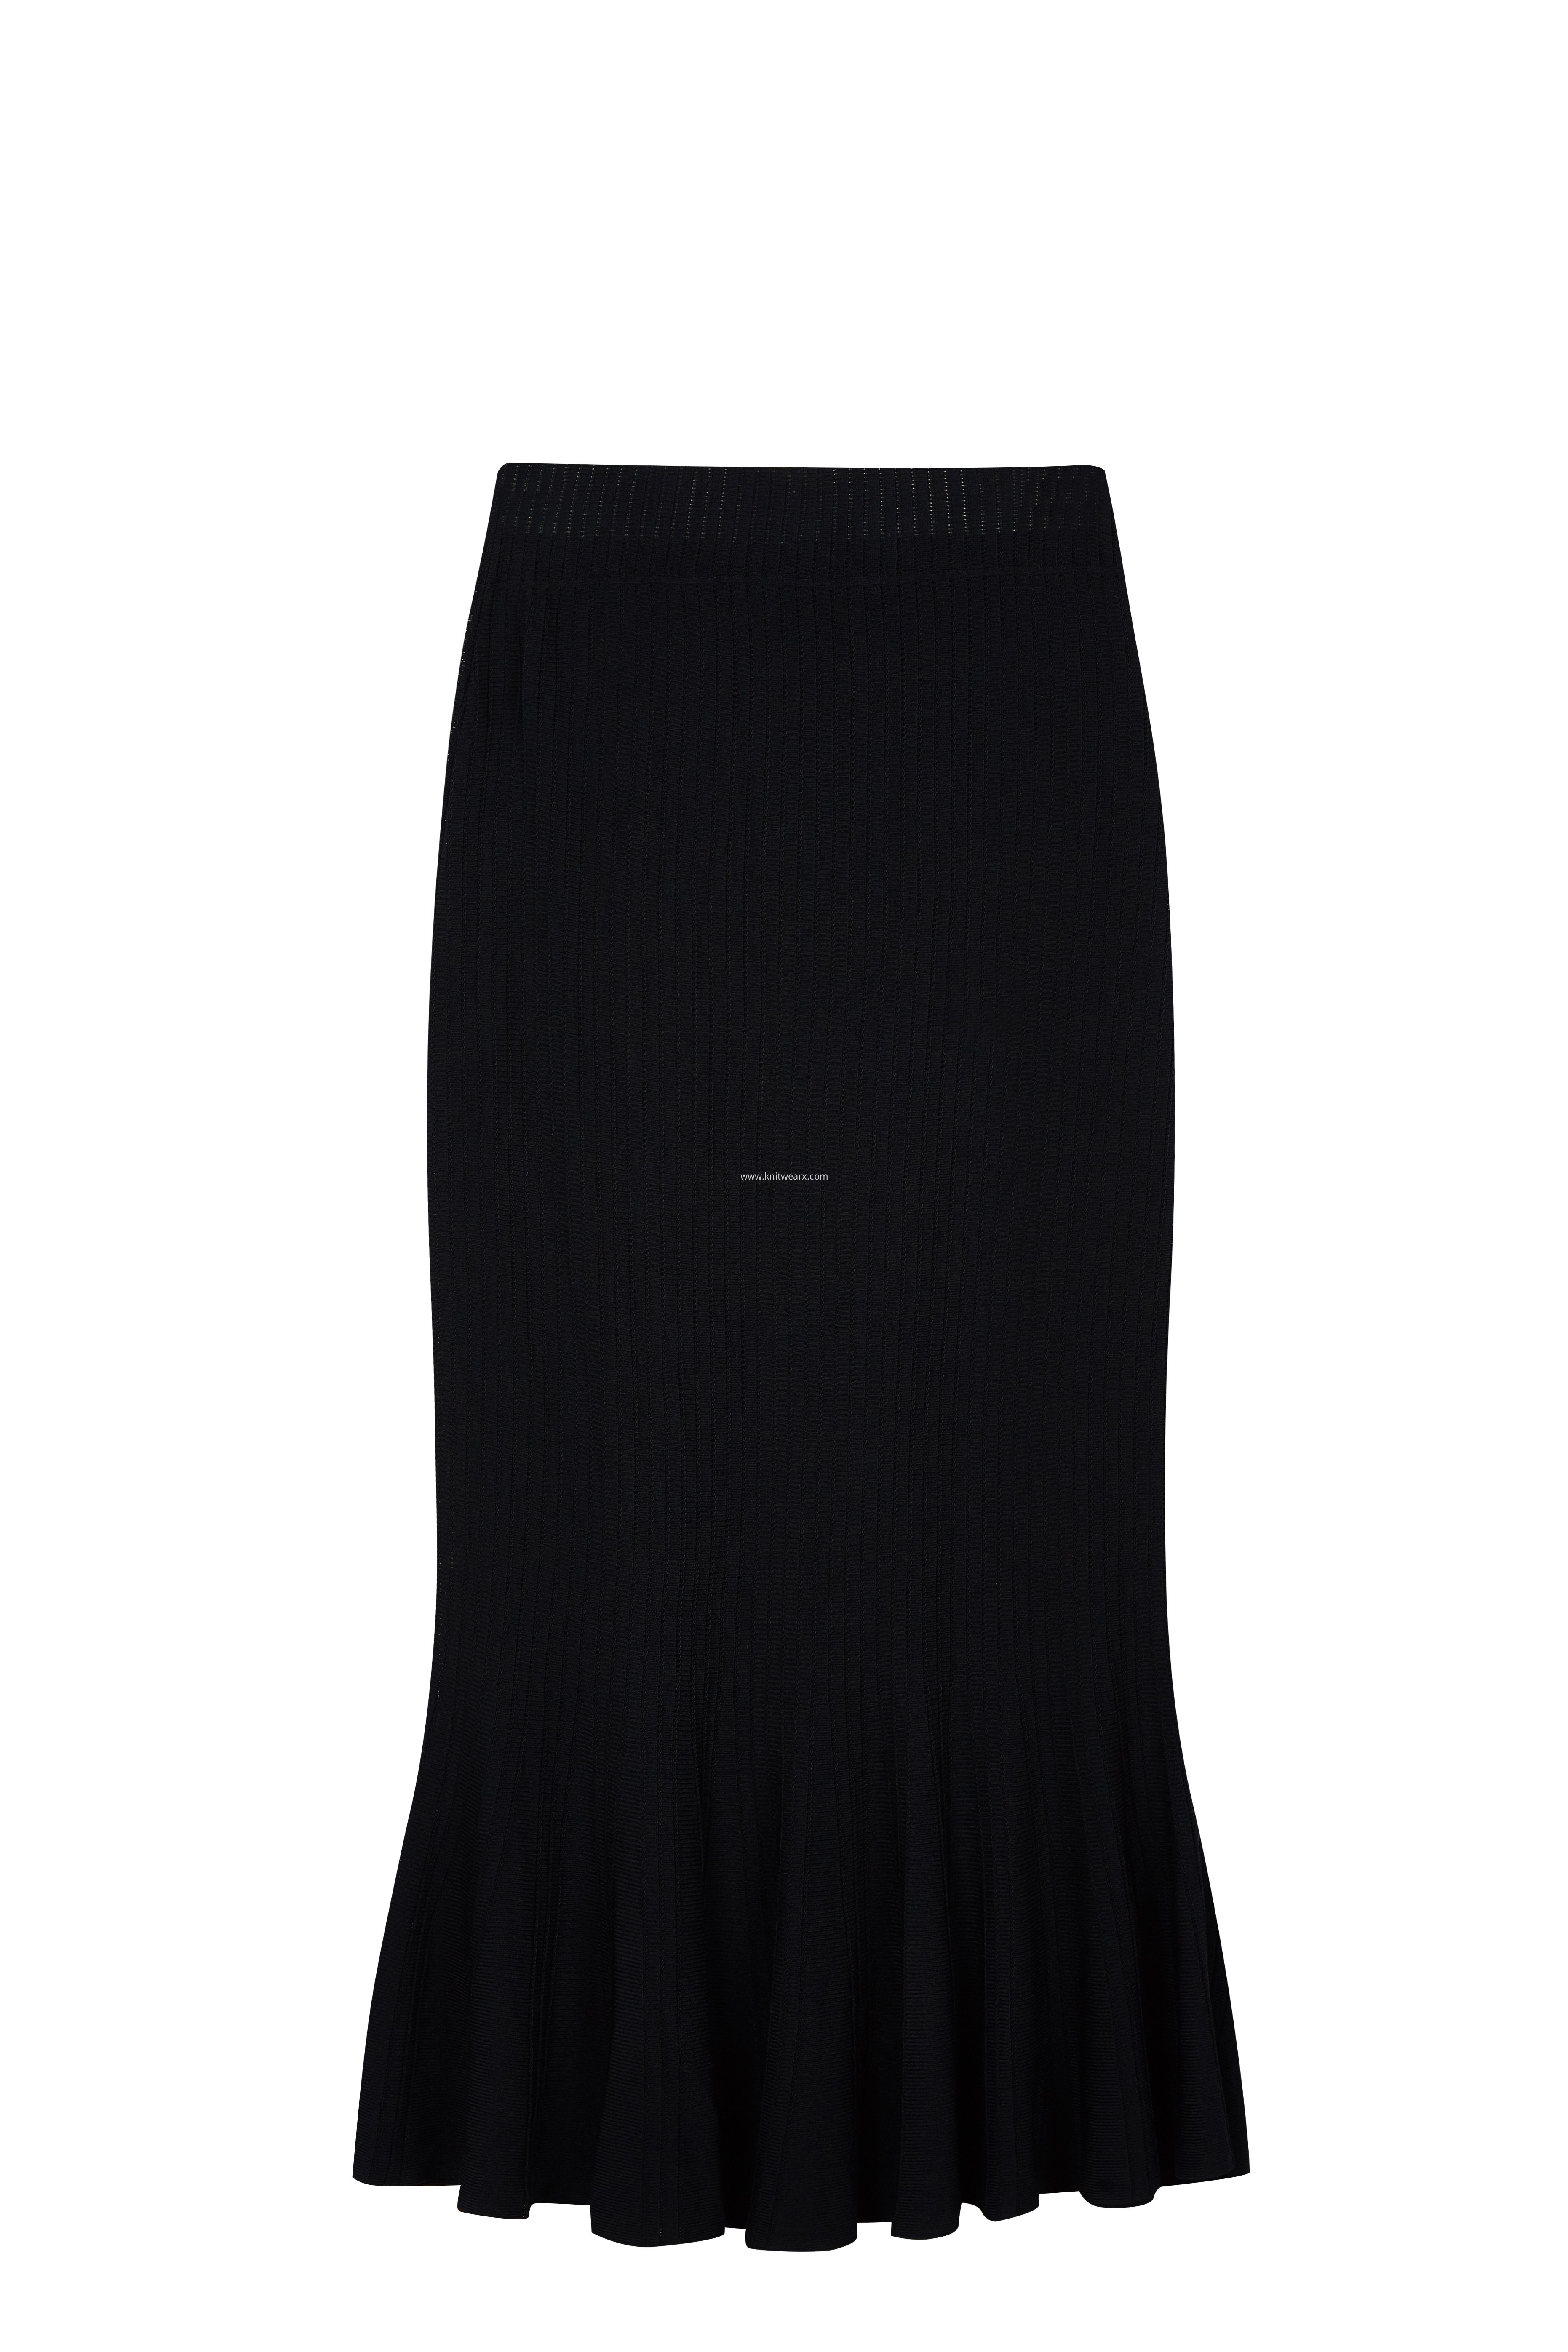 Women's Knitted Elastic Waist Fishtail Lady Skirt